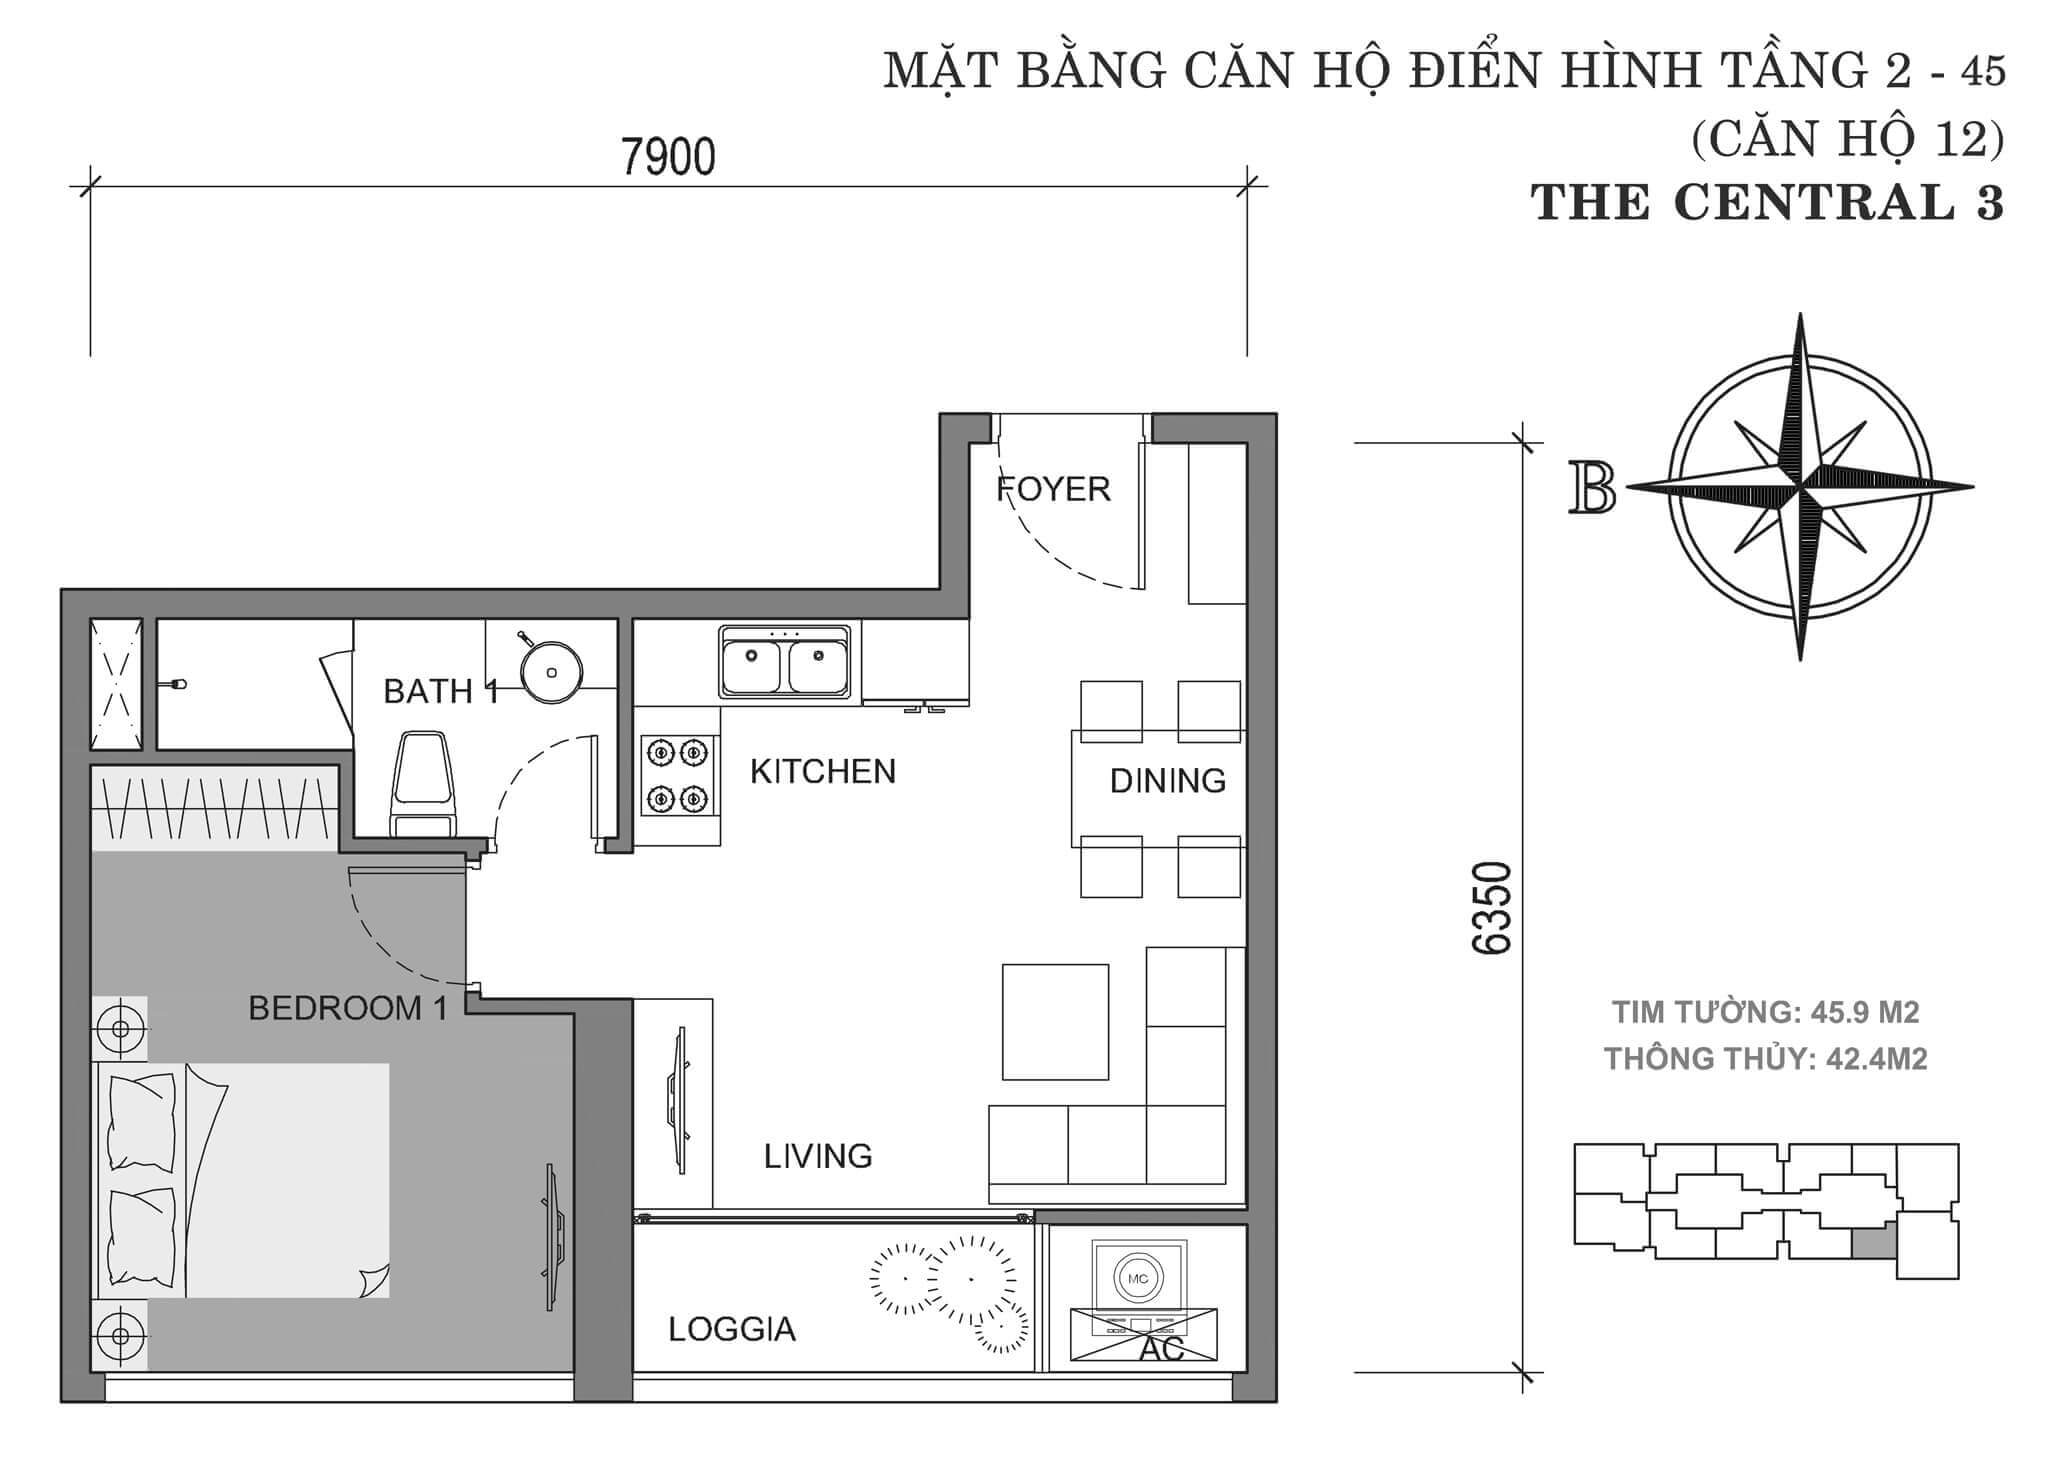 layout căn hộ số 12 tòa Central 3 tầng 2-45  